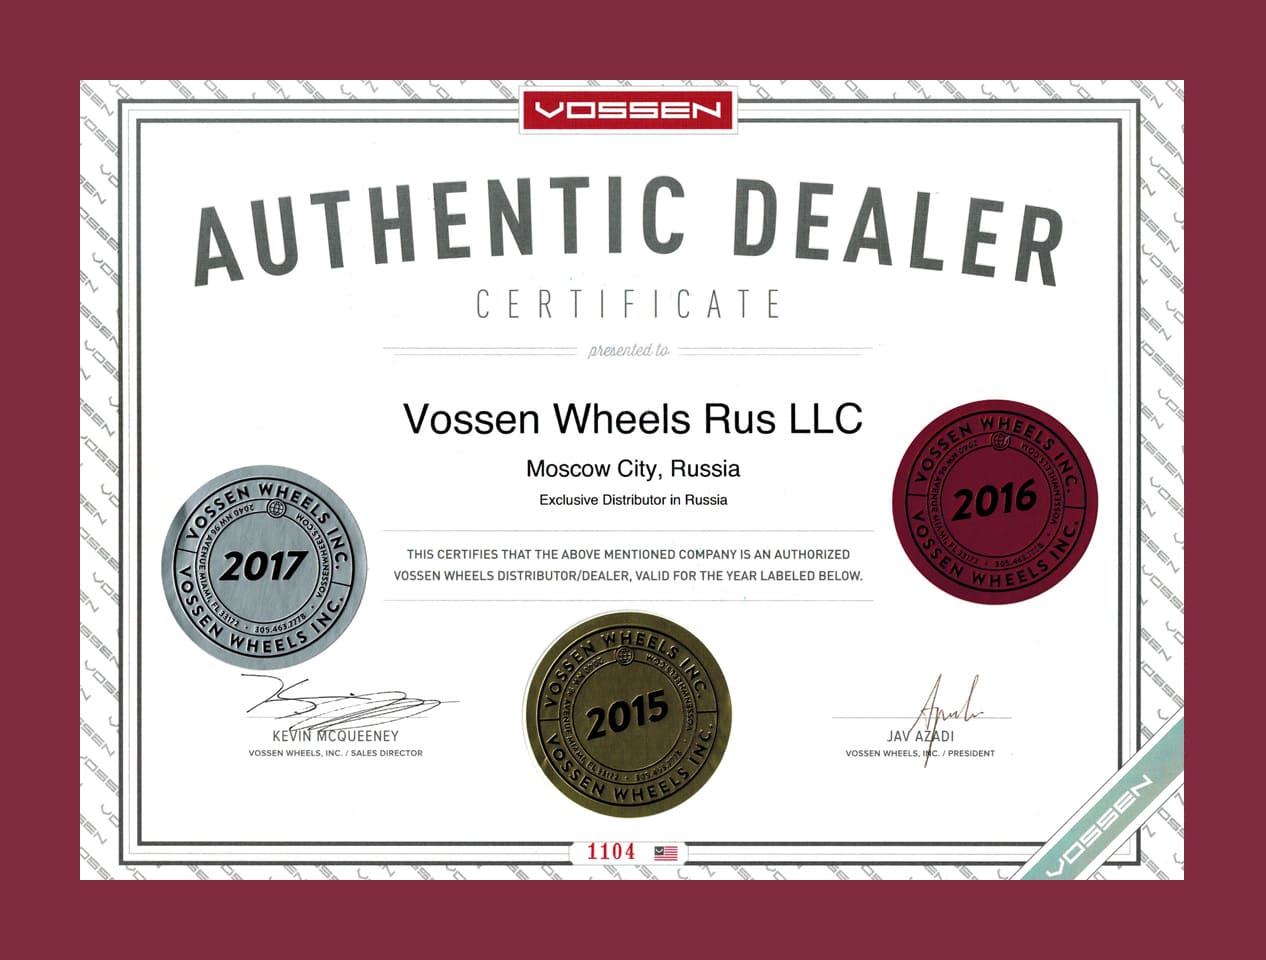 Официальный дилер Vossen Wheels Inc. в Российской Федерации и Республики Беларусь